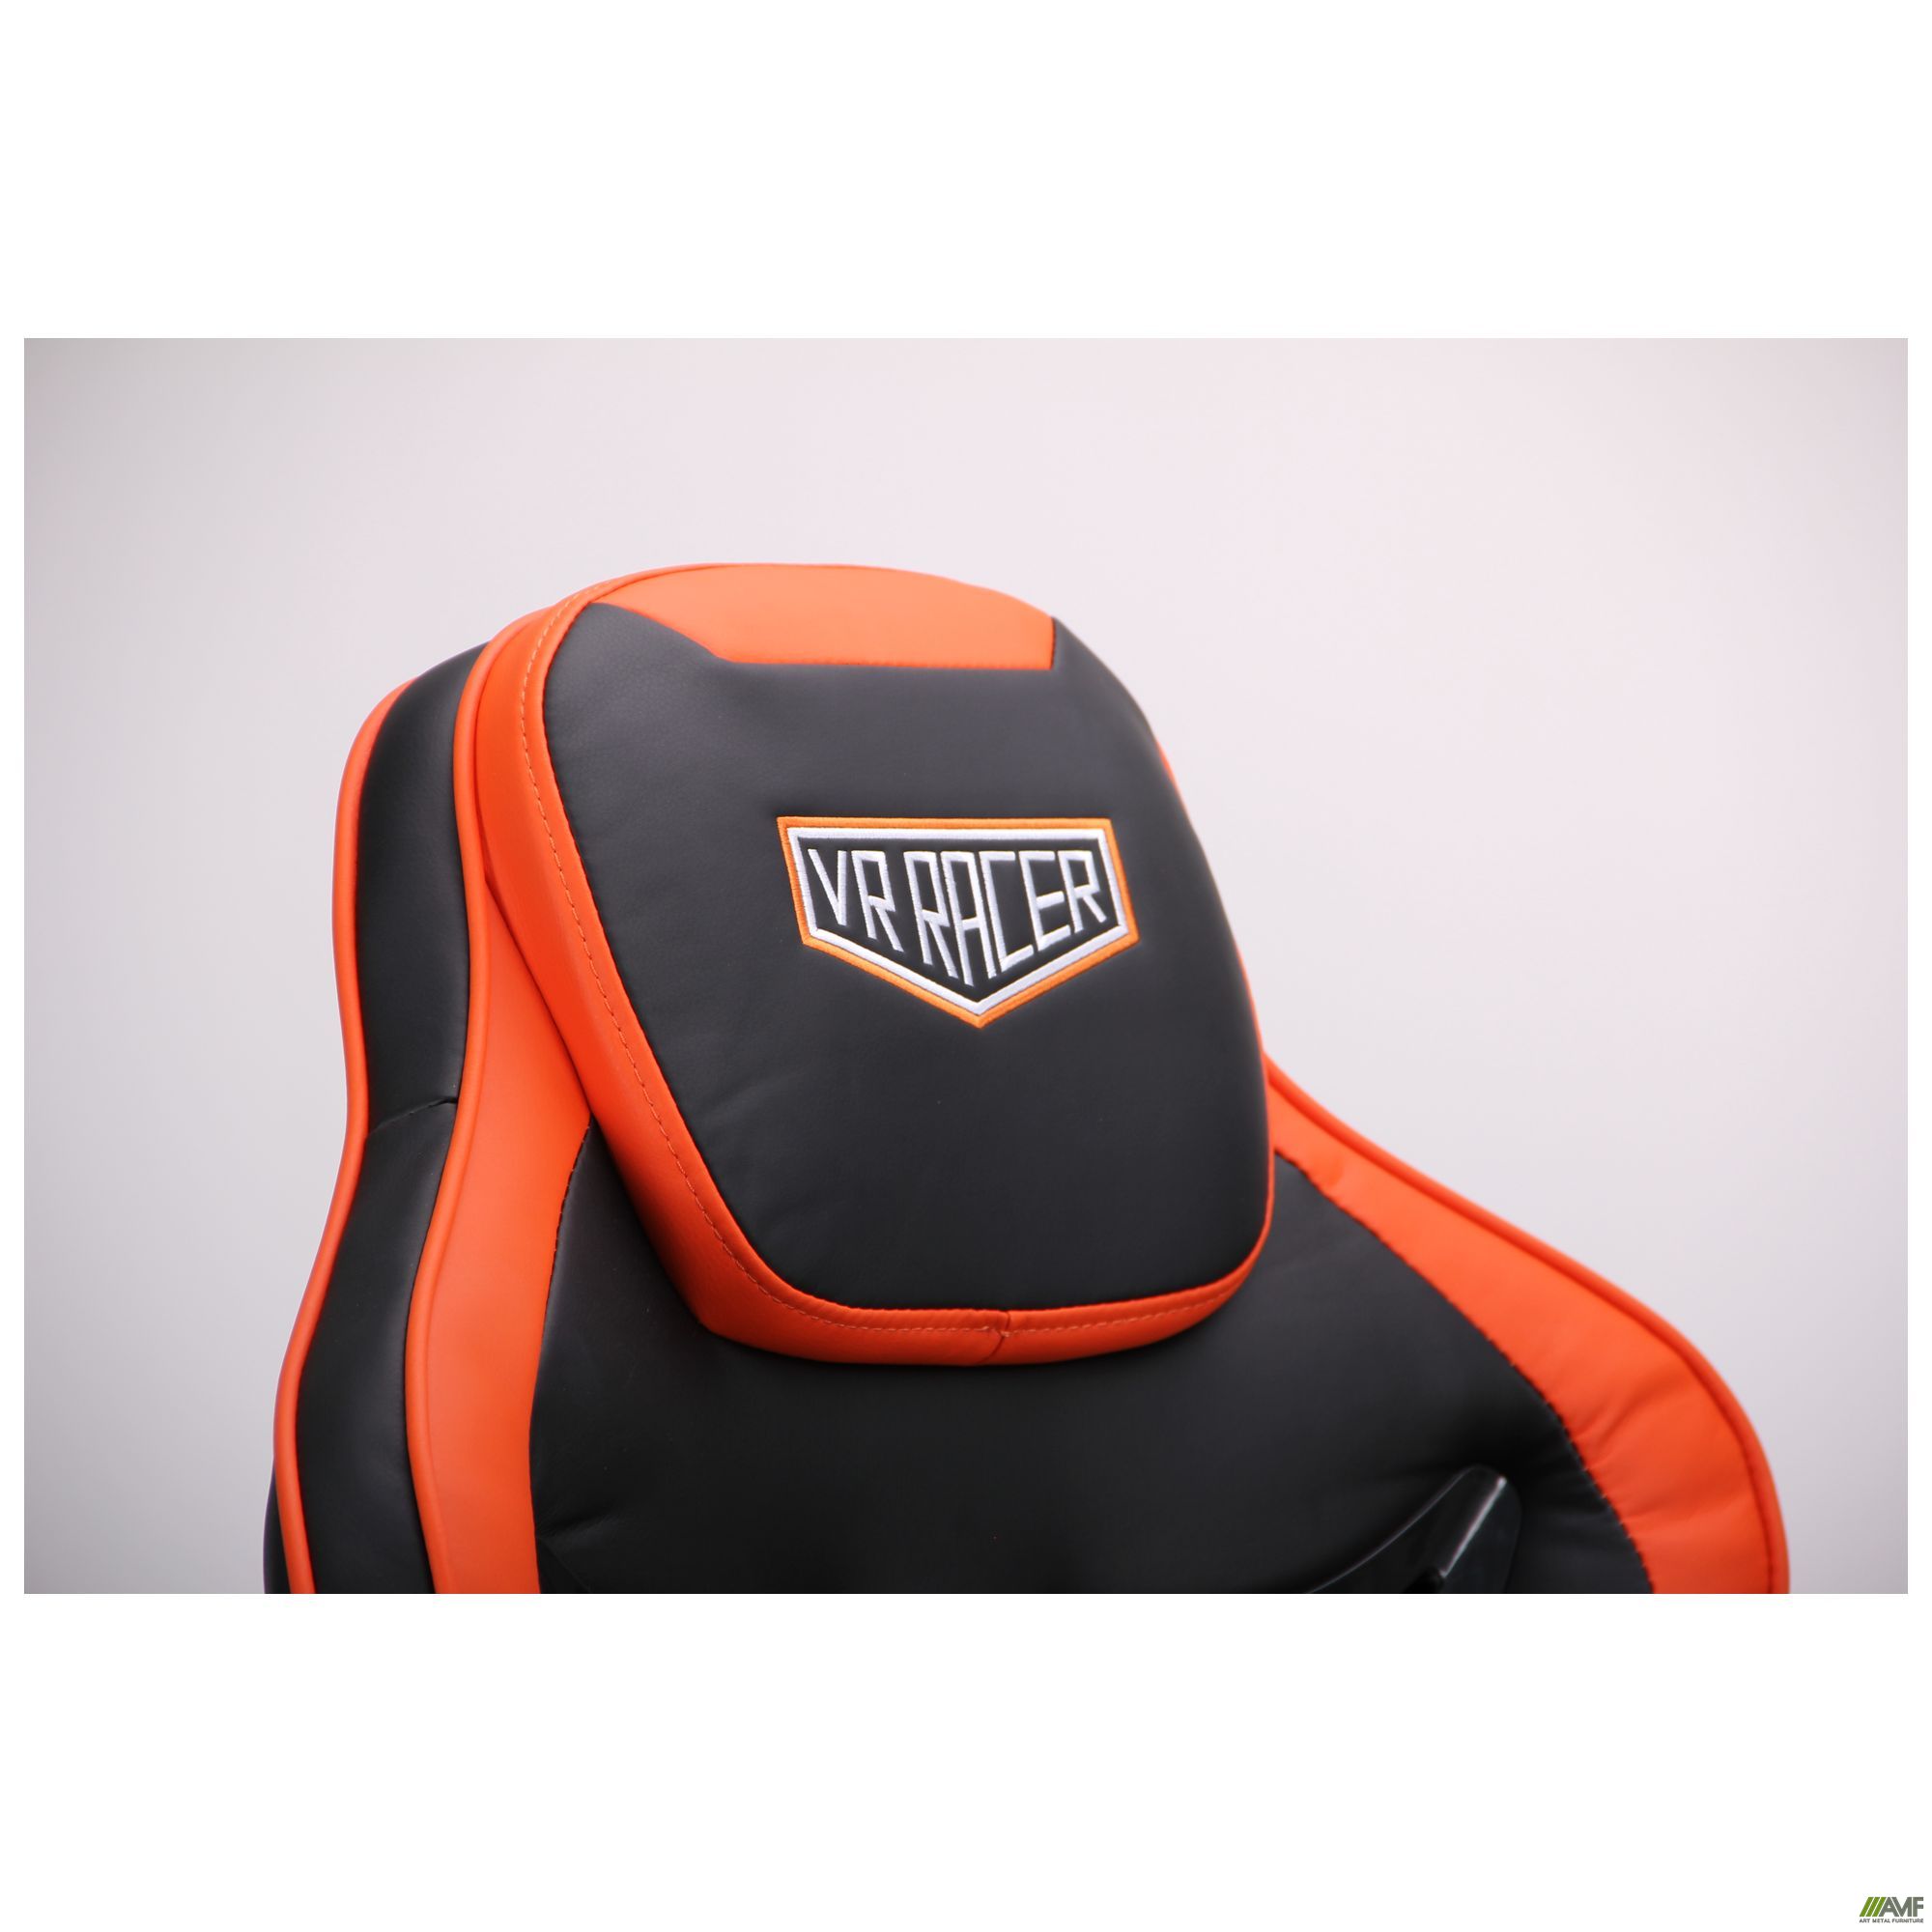 Фото 11 - Кресло VR Racer Expert Genius черный/оранжевый 